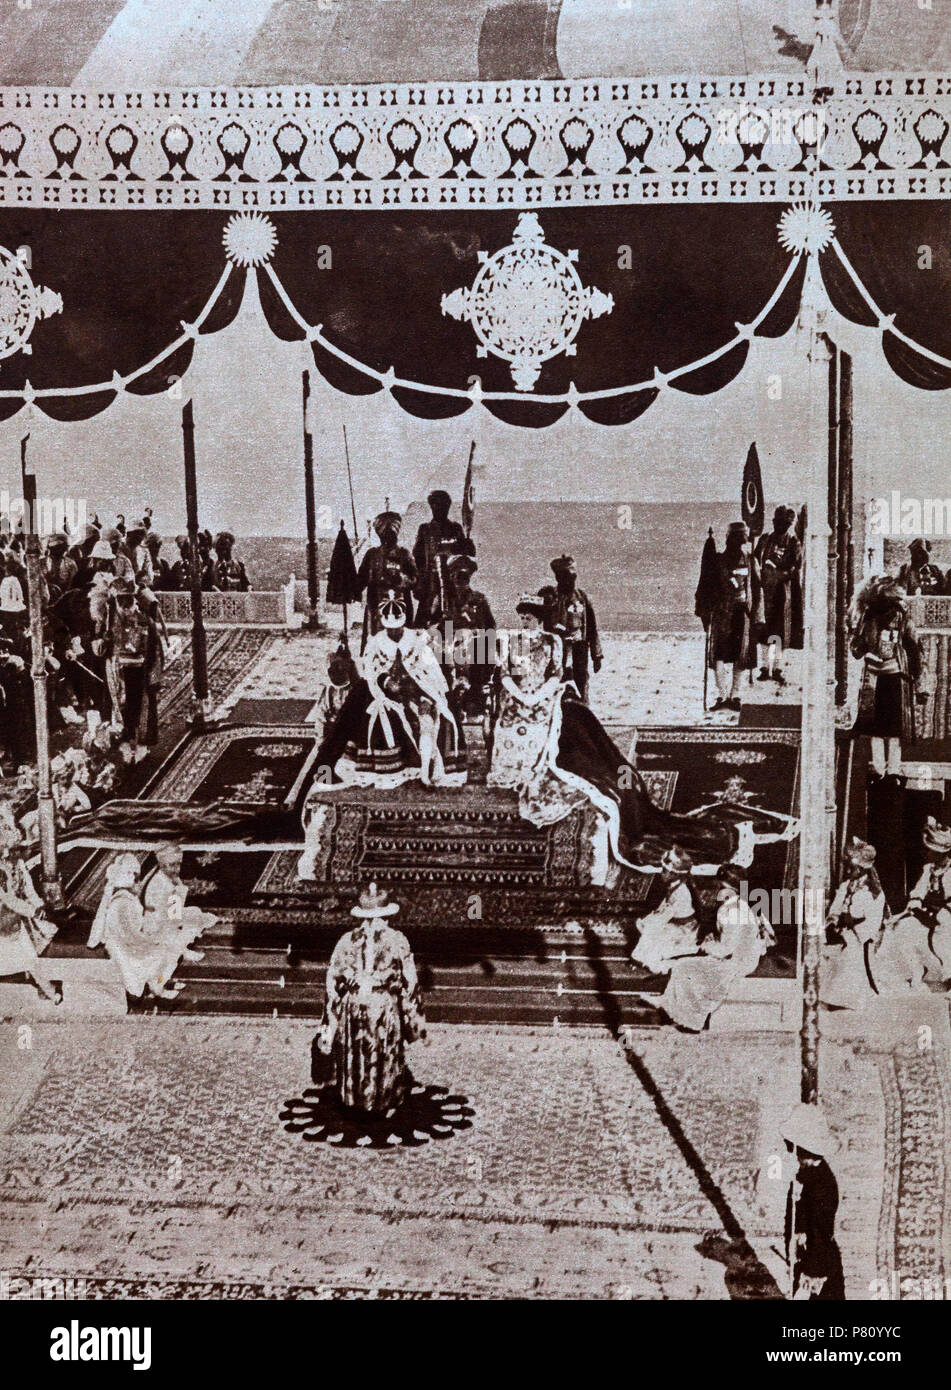 Die Delhi Durbar von 1911, was bedeutet, dass "Hof von Delhi" war ein Indischer imperialen Stil Masse Montage durch den britischen Coronation Park, Delhi, Indien, organisiert, um die Nachfolge von einem Kaiser und Kaiserin von Indien. Auch die kaiserliche Durbar bekannt, es wurde drei Mal statt, 1877, 1903 und 1911, auf der Höhe des Britischen Empire. Die 1911 Durbar war die Einzige, die einen souveränen, George V, teil. Die Nizam von Hyderabad ist eine Hommage an den Kaiser und die Kaiserin an der Delhi Durbar, Dezember 1911 Stockfoto